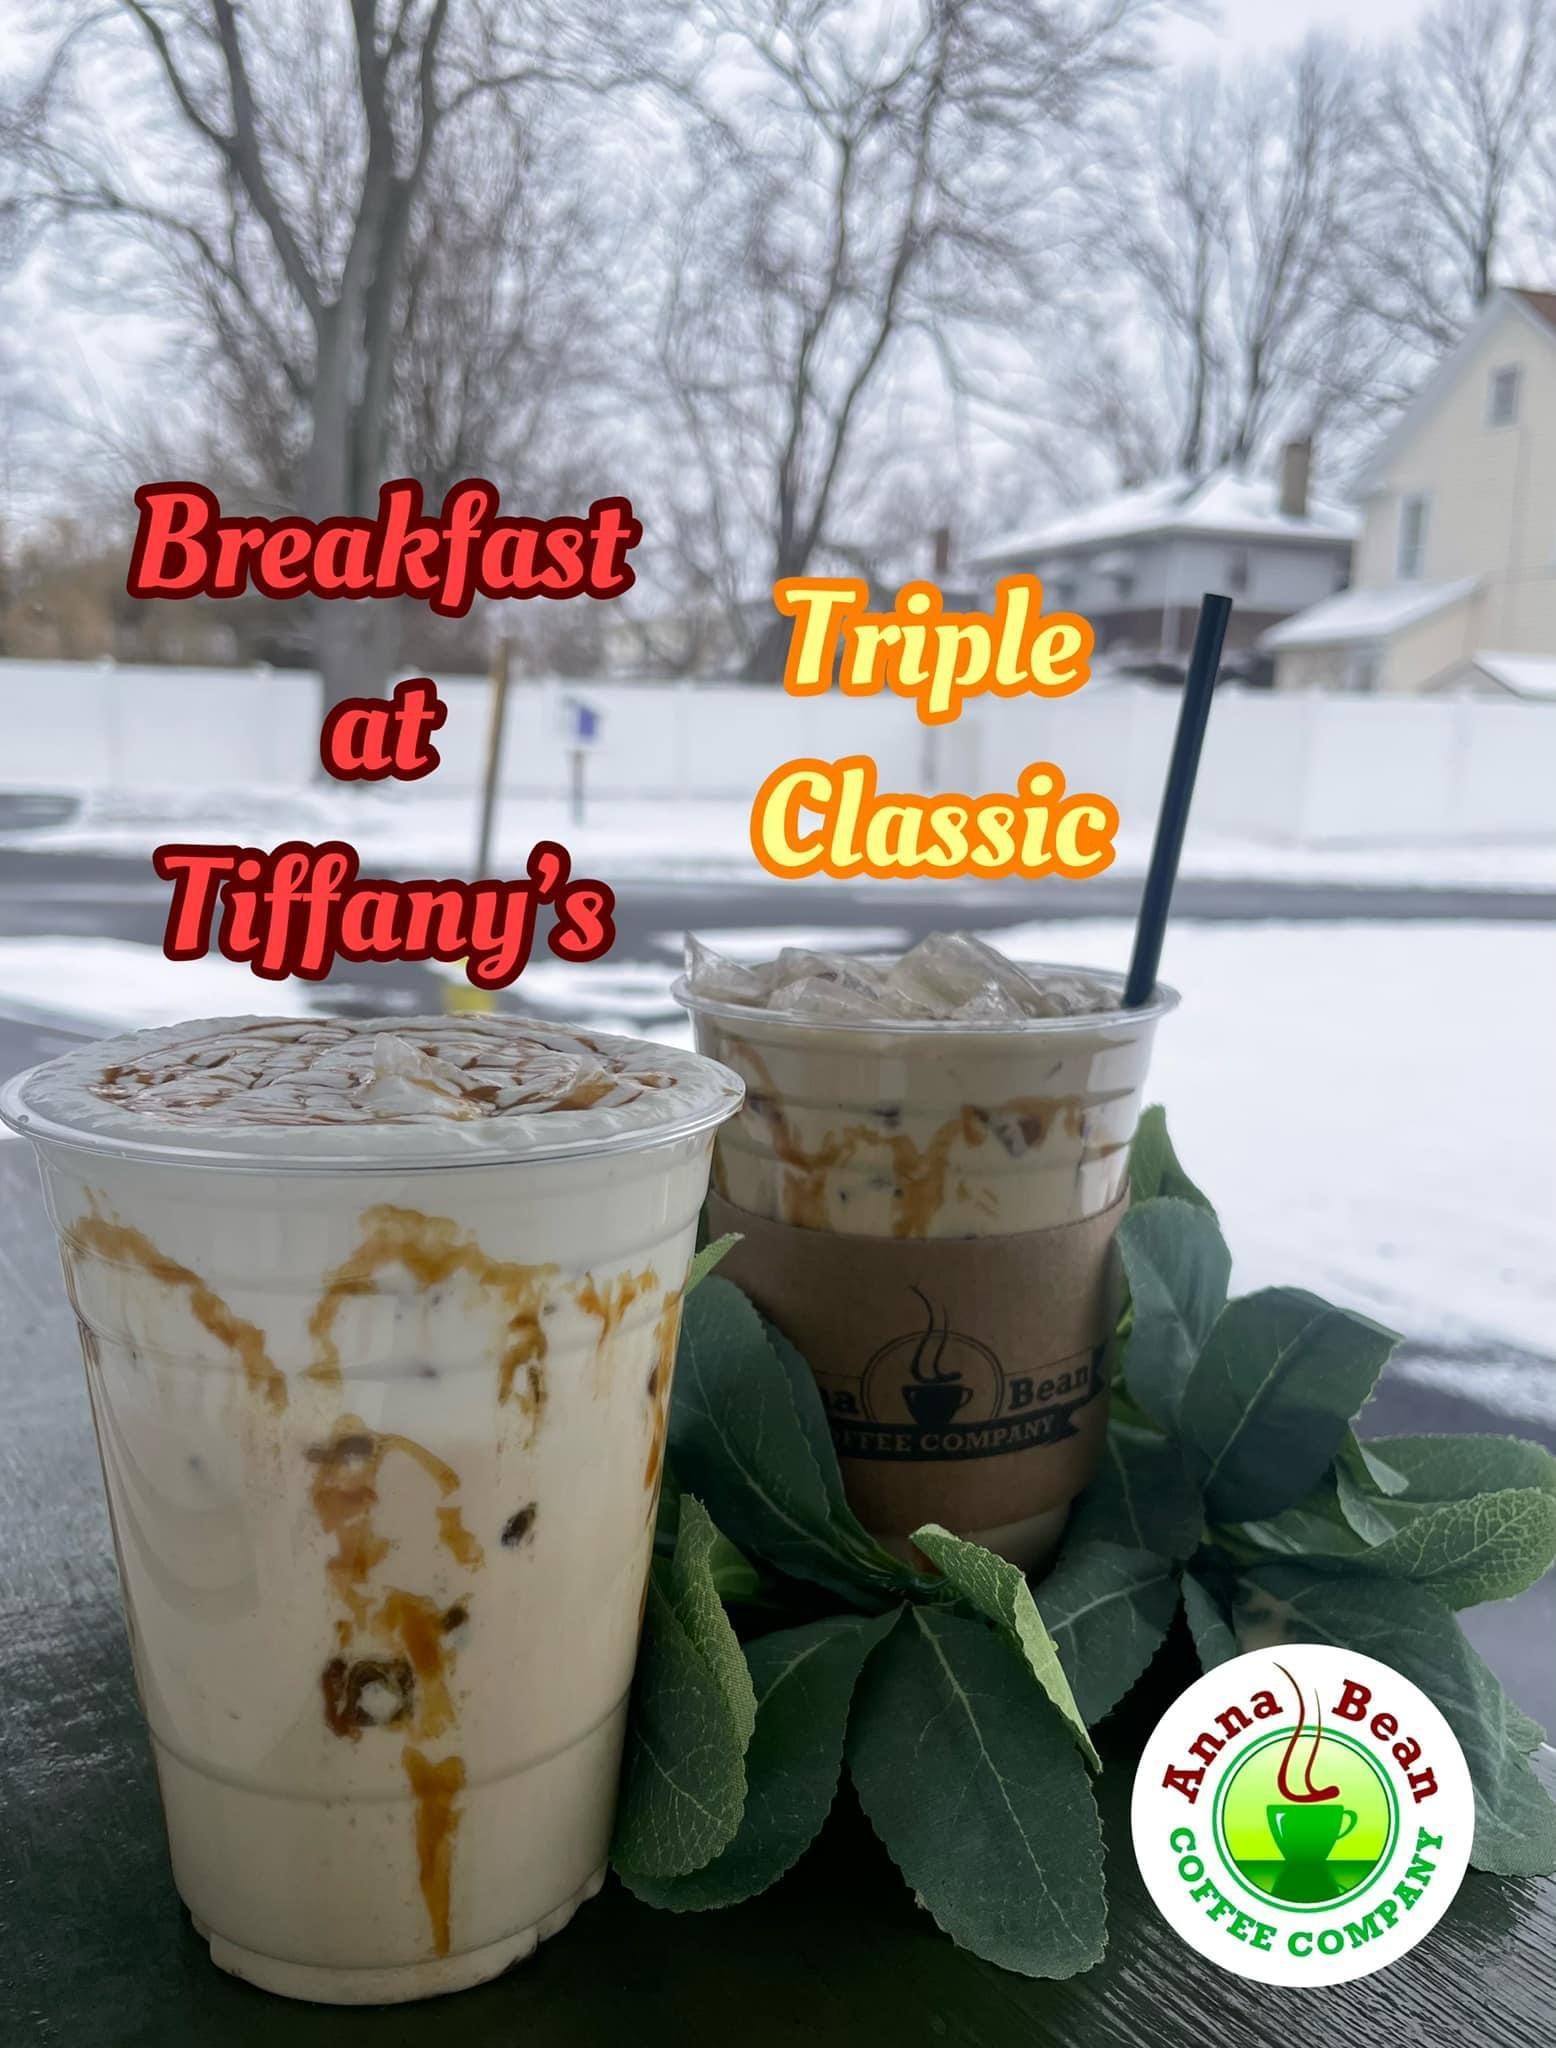 ICED Breakfast at Tiffany’s